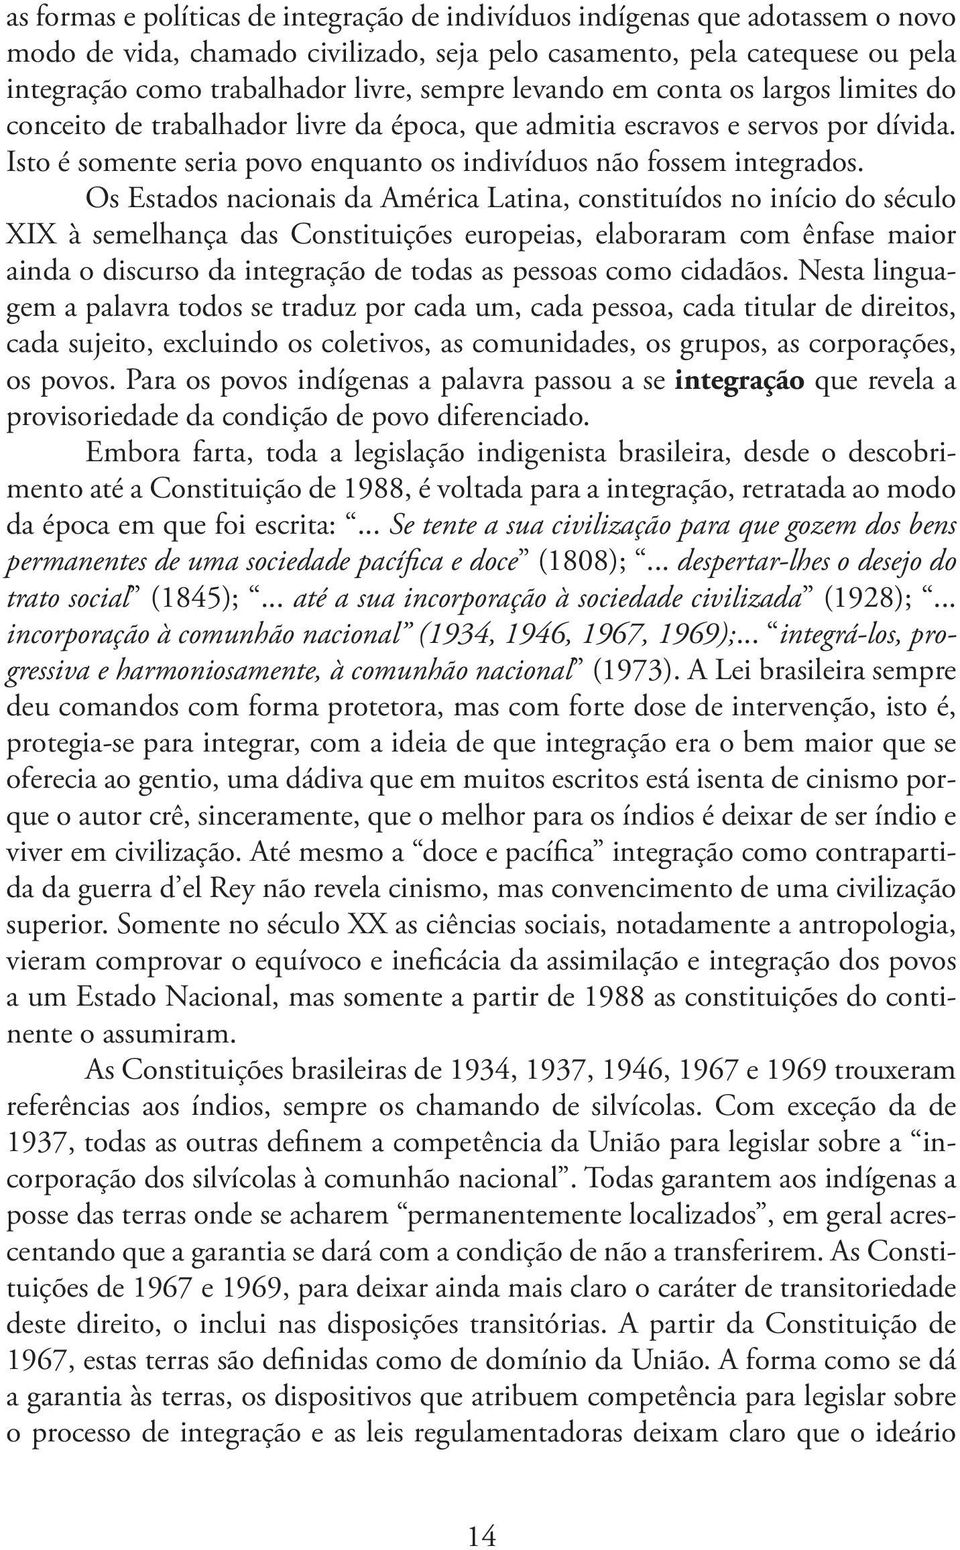 Os Estados nacionais da América Latina, constituídos no início do século XIX à semelhança das Constituições europeias, elaboraram com ênfase maior ainda o discurso da integração de todas as pessoas